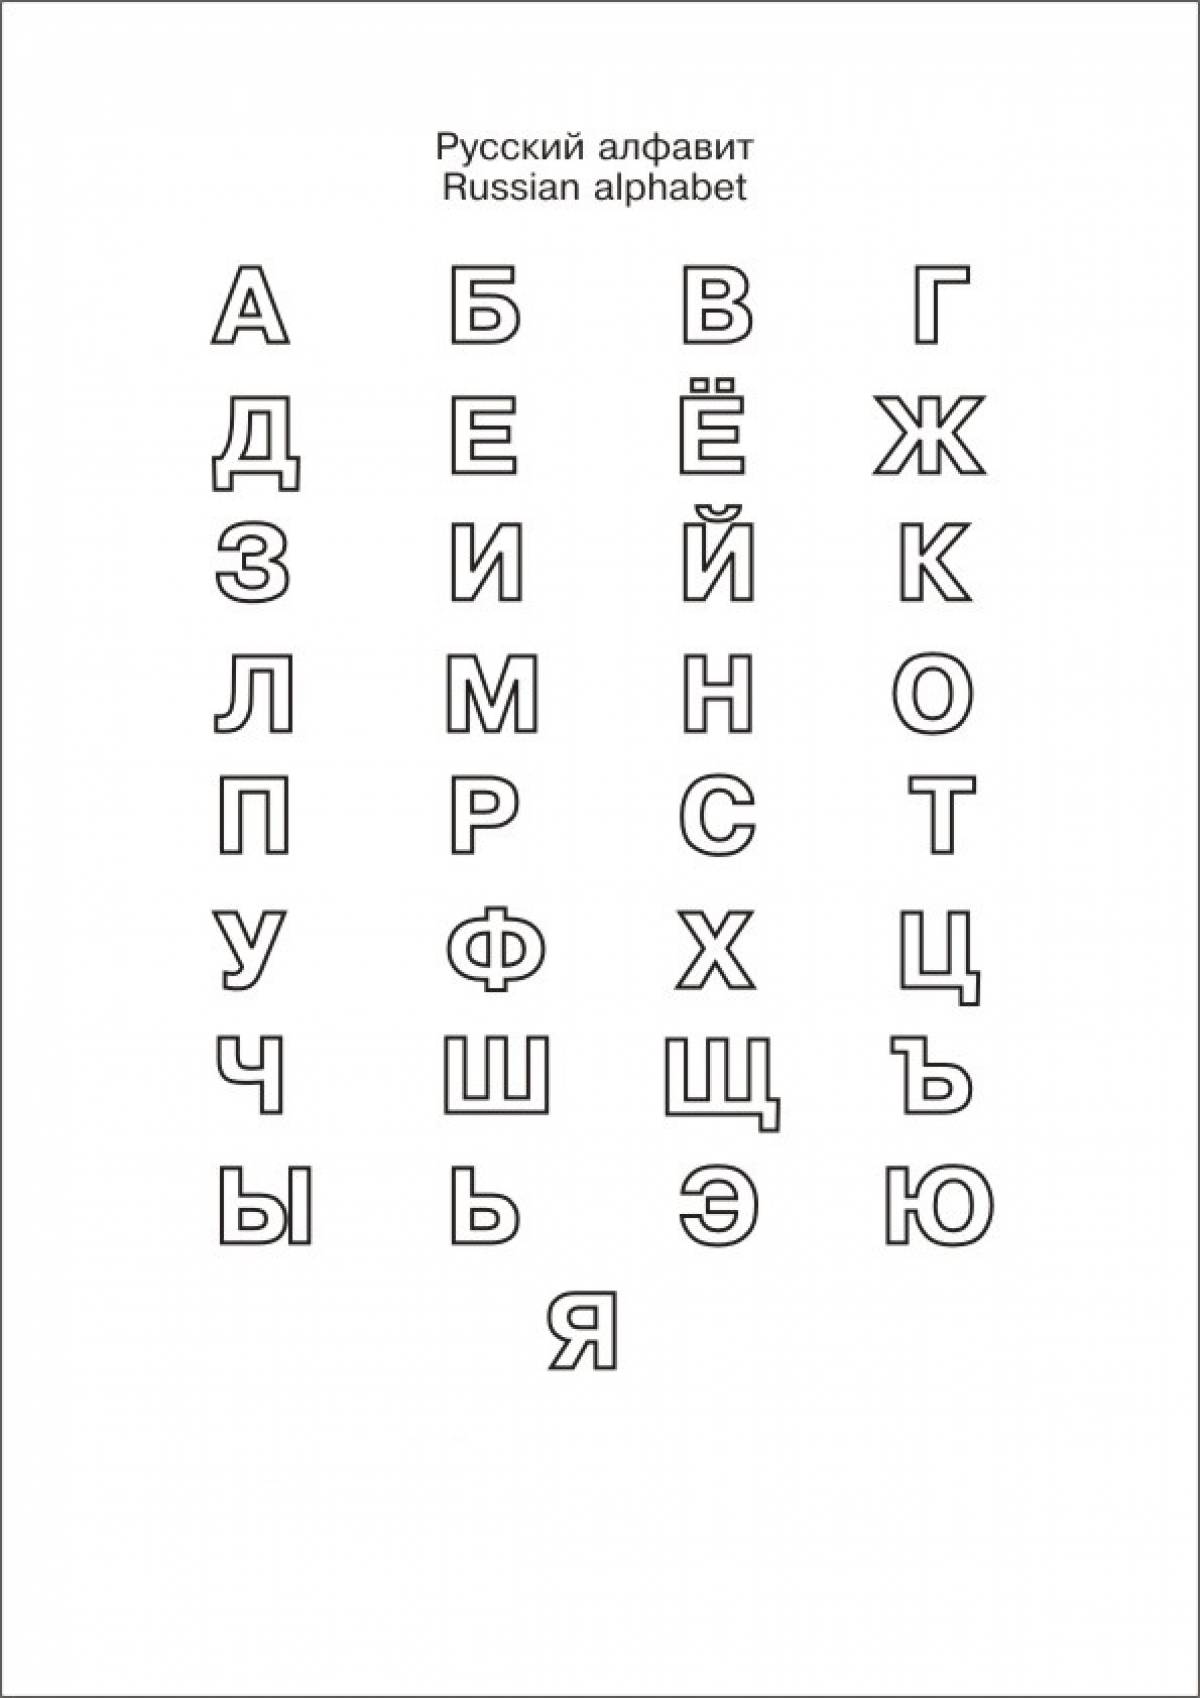 Learn the alphabet